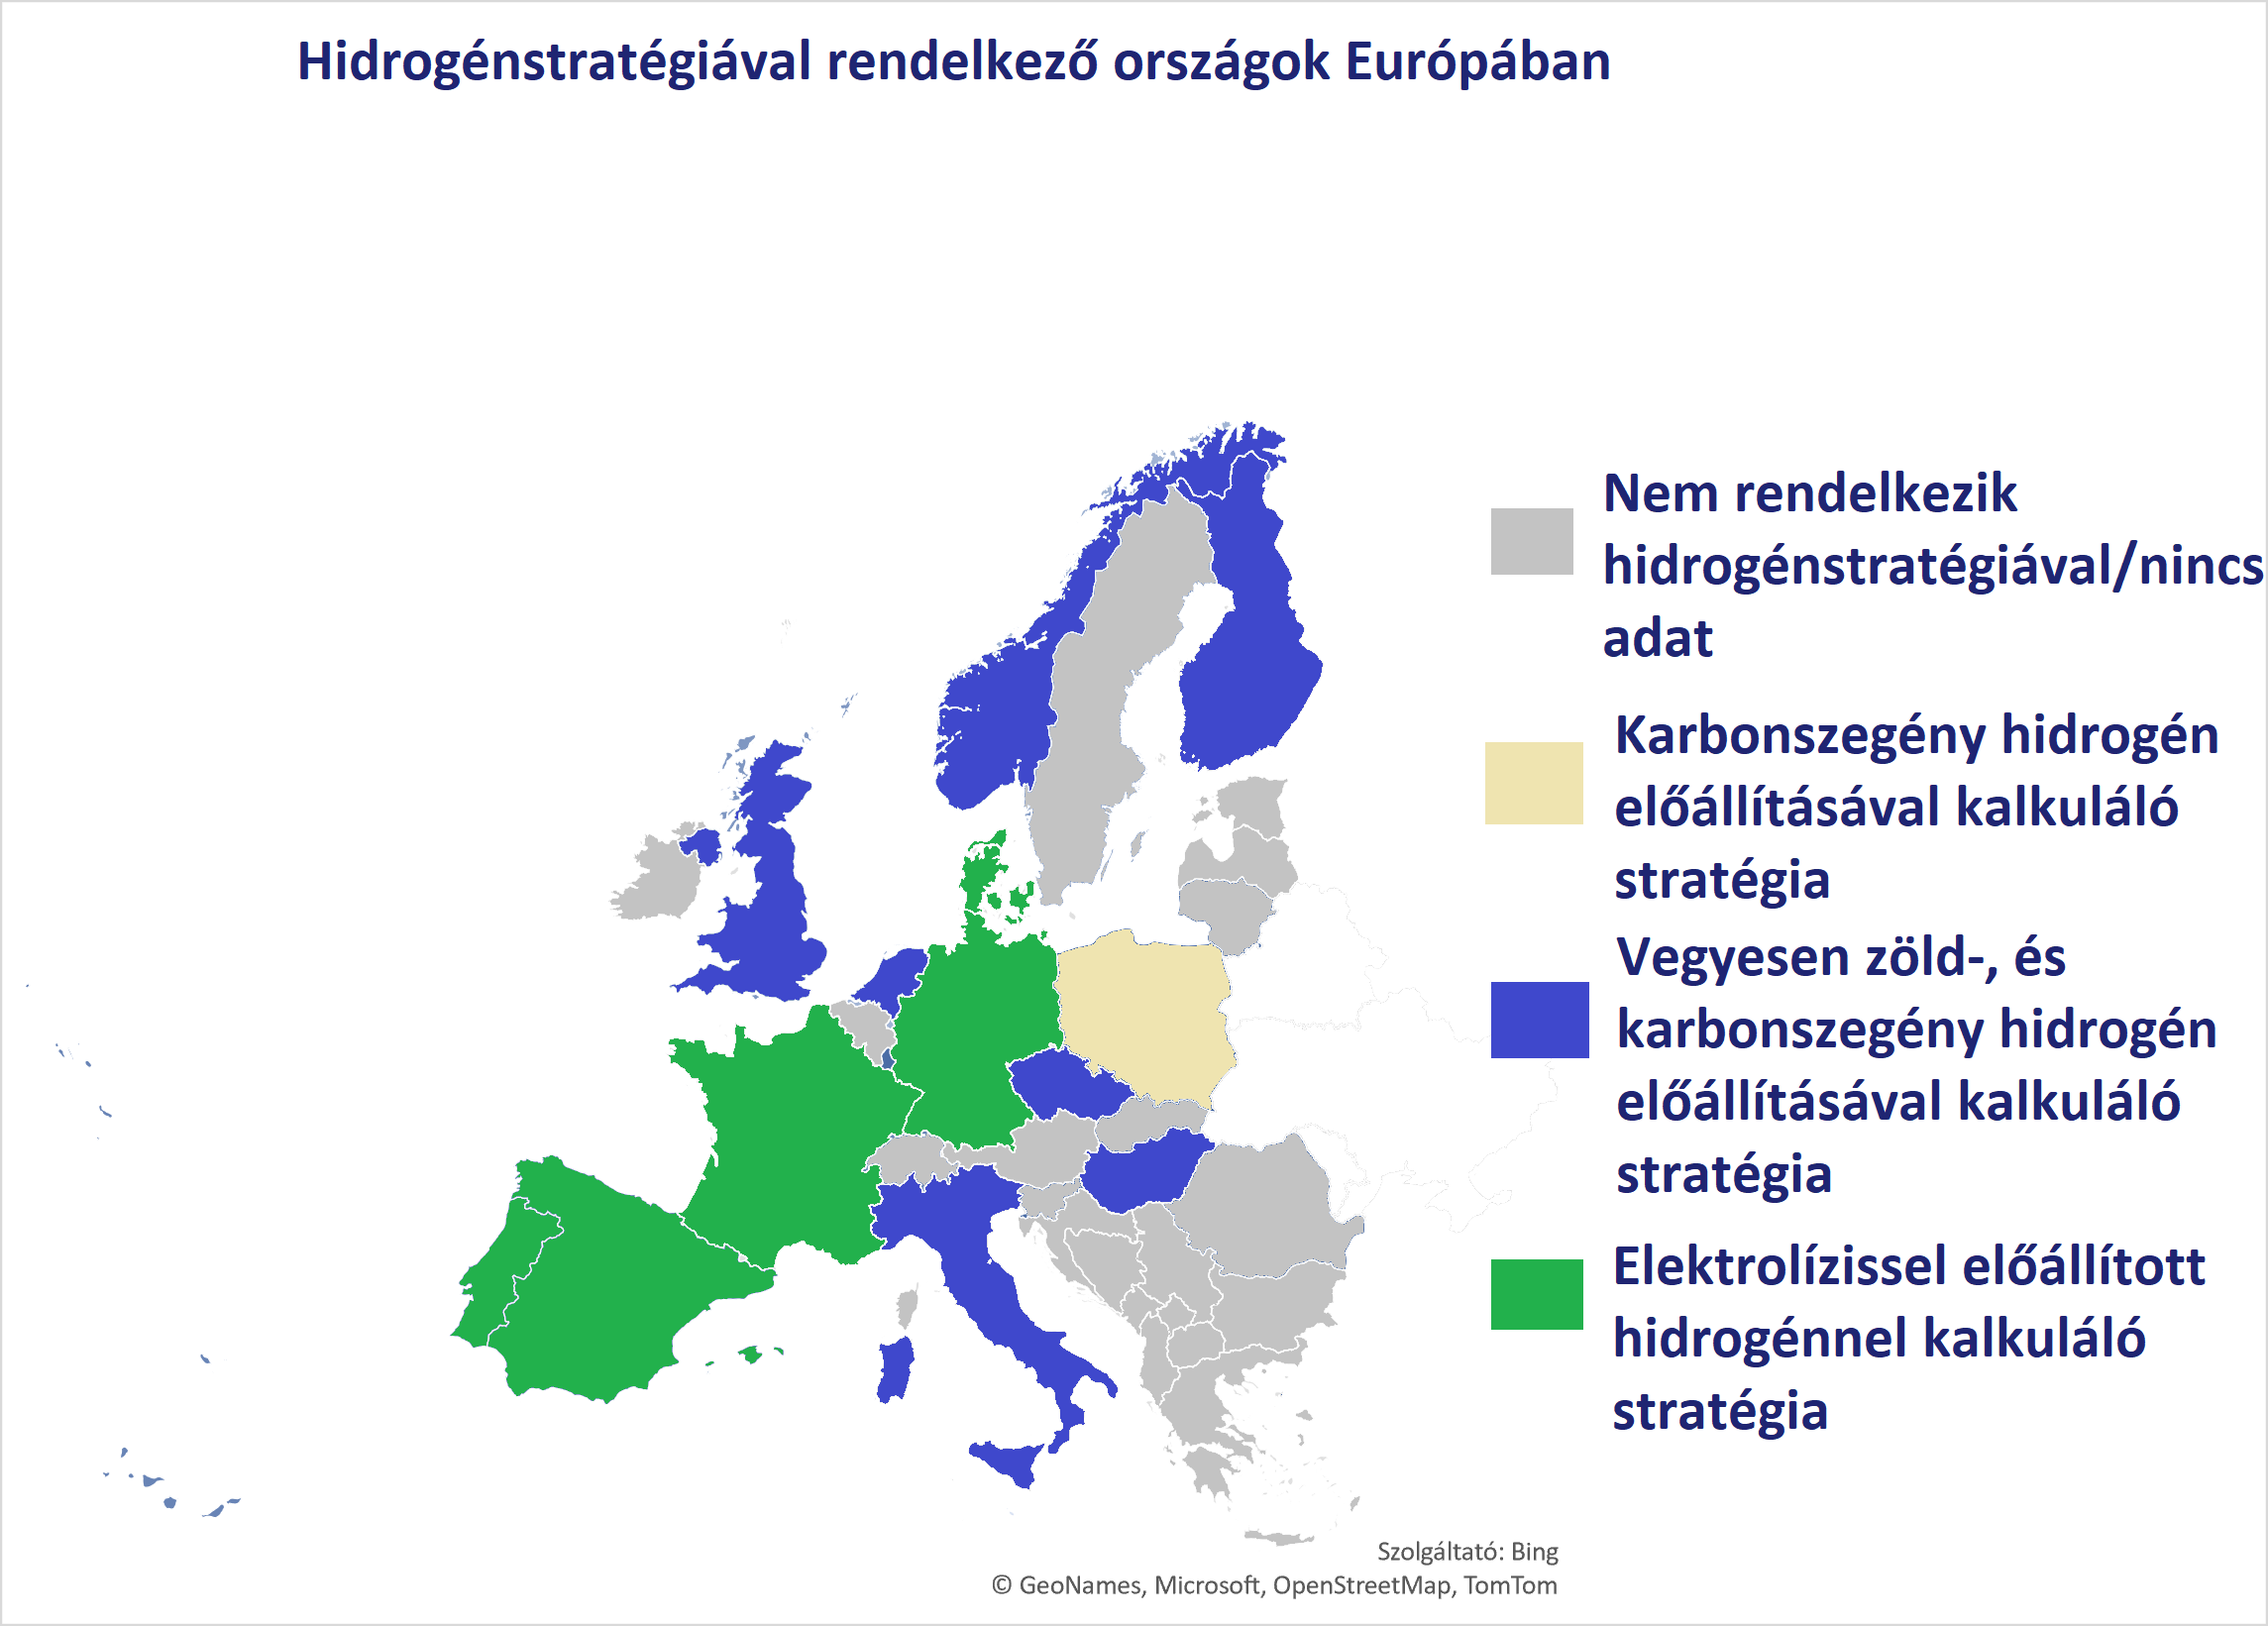 Hidrogénstratégiával rendelkező országok európában